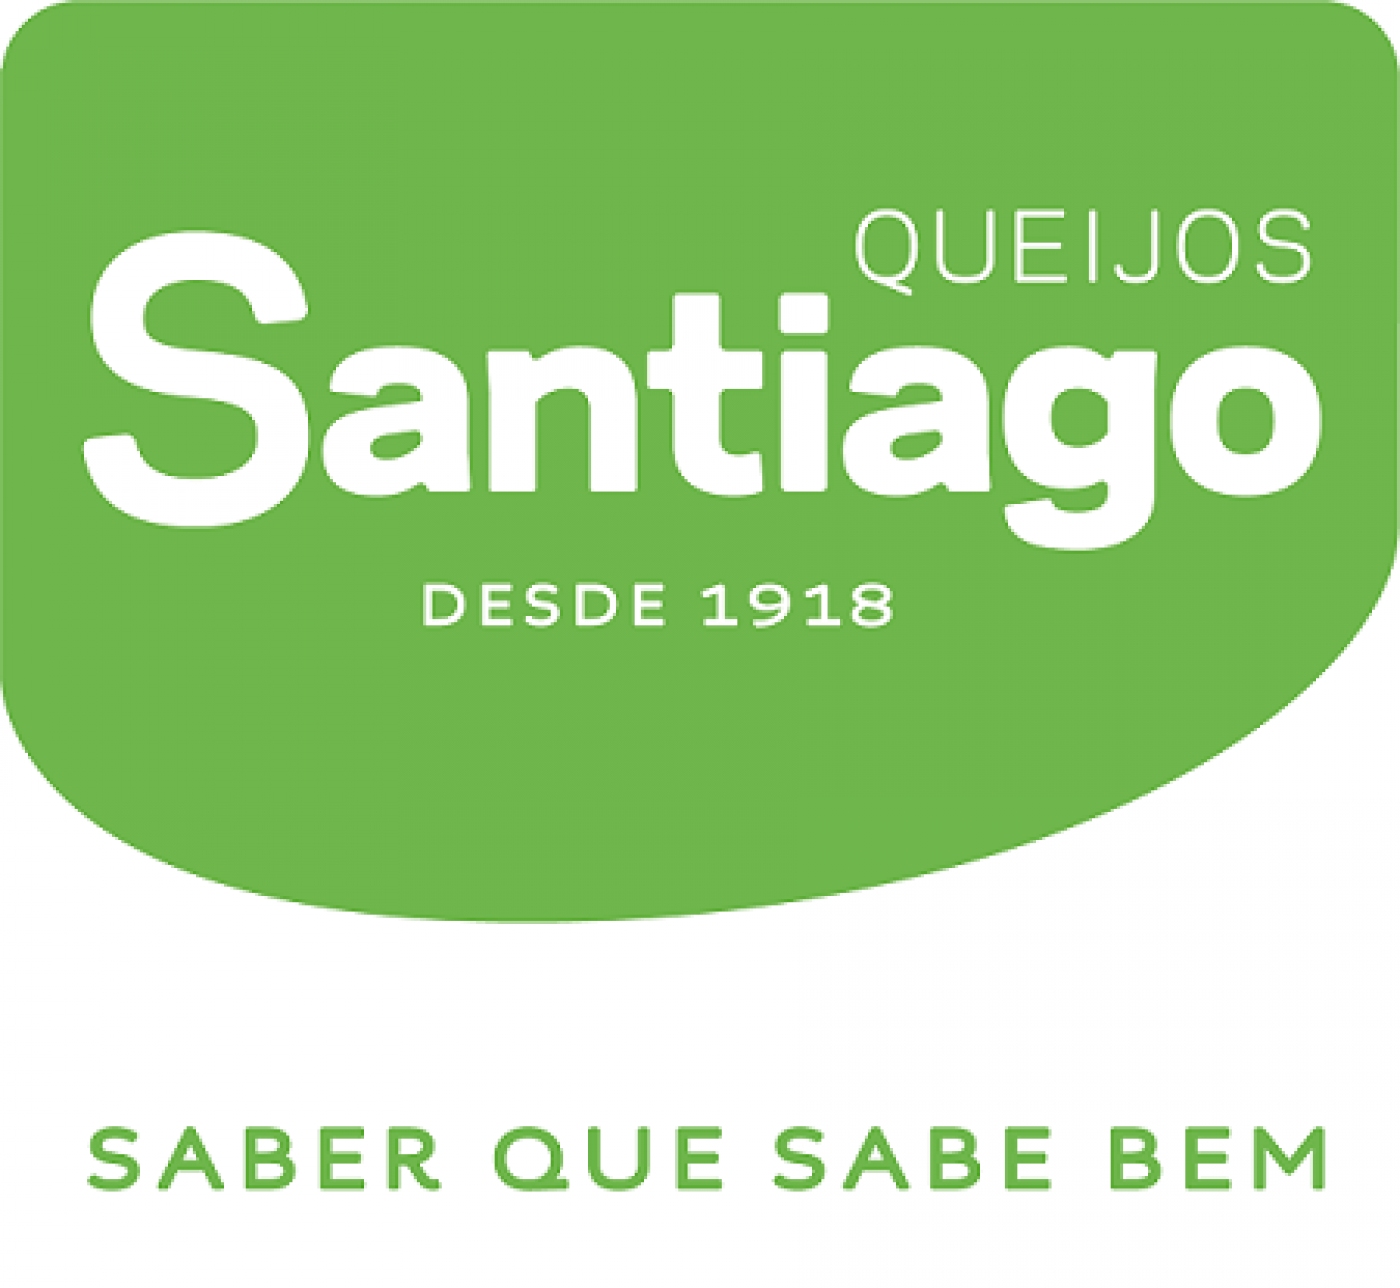 Testemunho Queijos Santiago | Certificação IFS Food